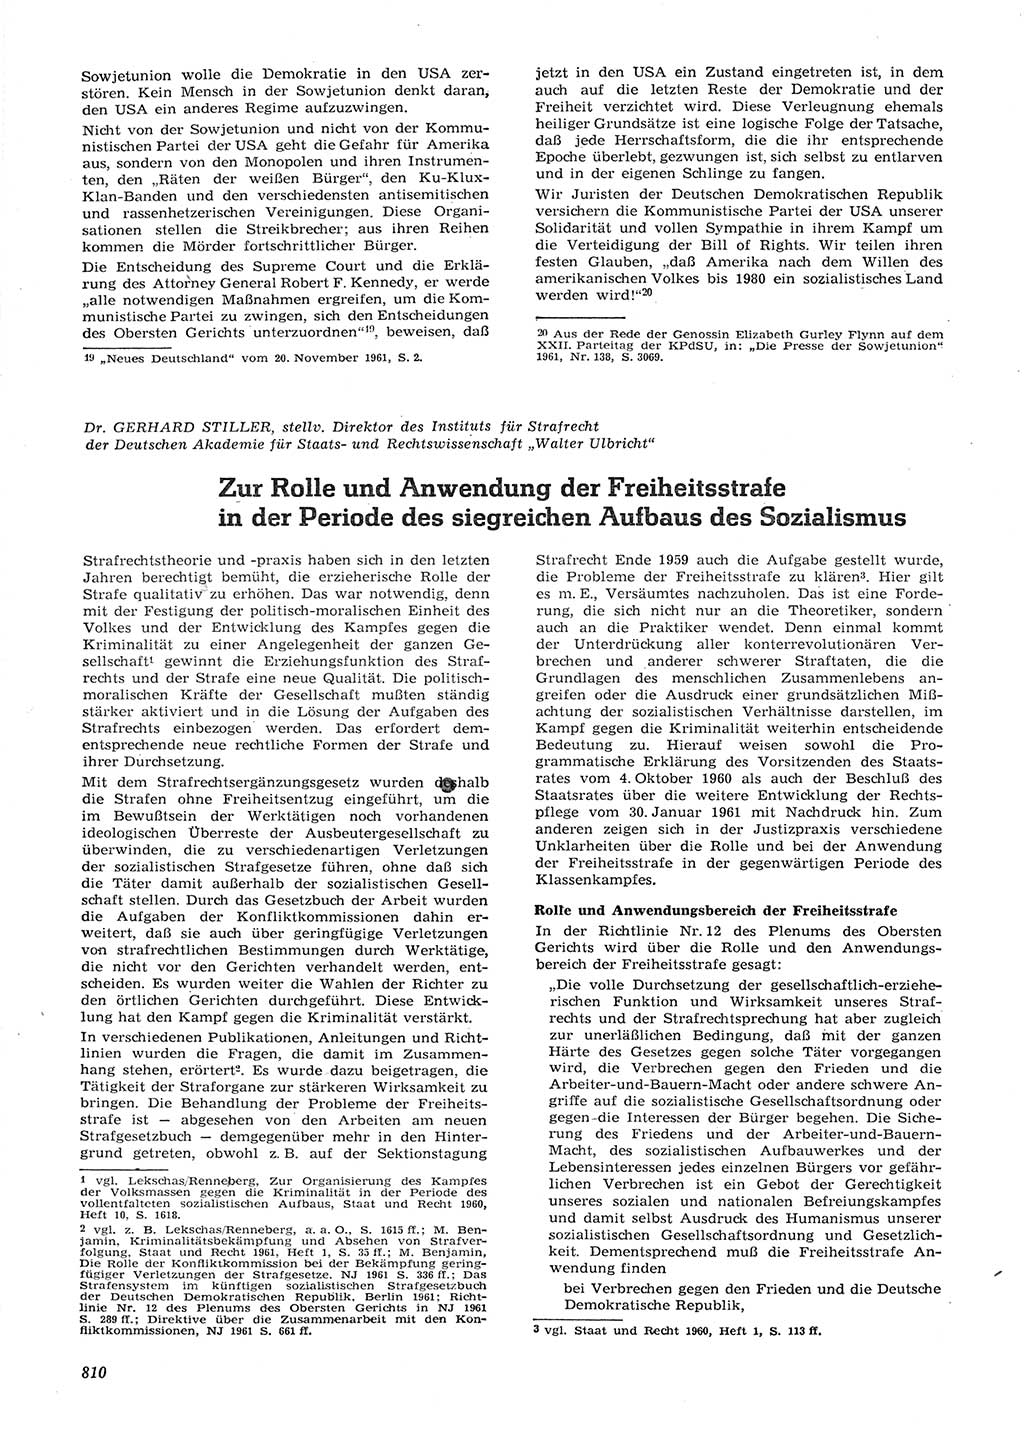 Neue Justiz (NJ), Zeitschrift für Recht und Rechtswissenschaft [Deutsche Demokratische Republik (DDR)], 15. Jahrgang 1961, Seite 810 (NJ DDR 1961, S. 810)